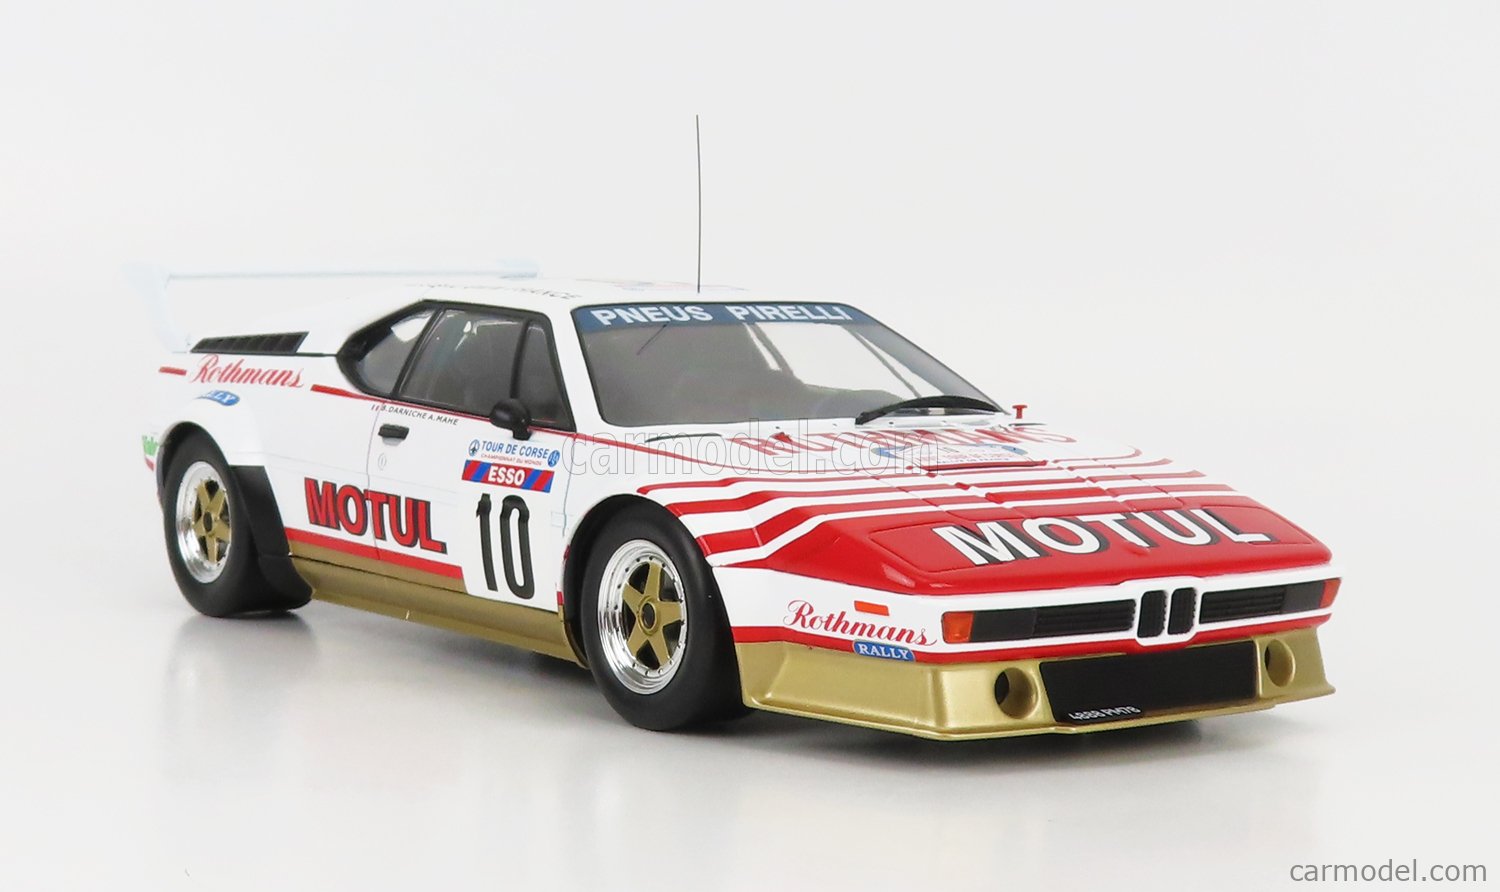 IXO-MODELS 18RMC114.22 Scale 1/18  BMW M1 MOTUL N 10 RALLY TOUR DE CORSE 1982 B.DARNICHE - A.MAHE WHITE RED